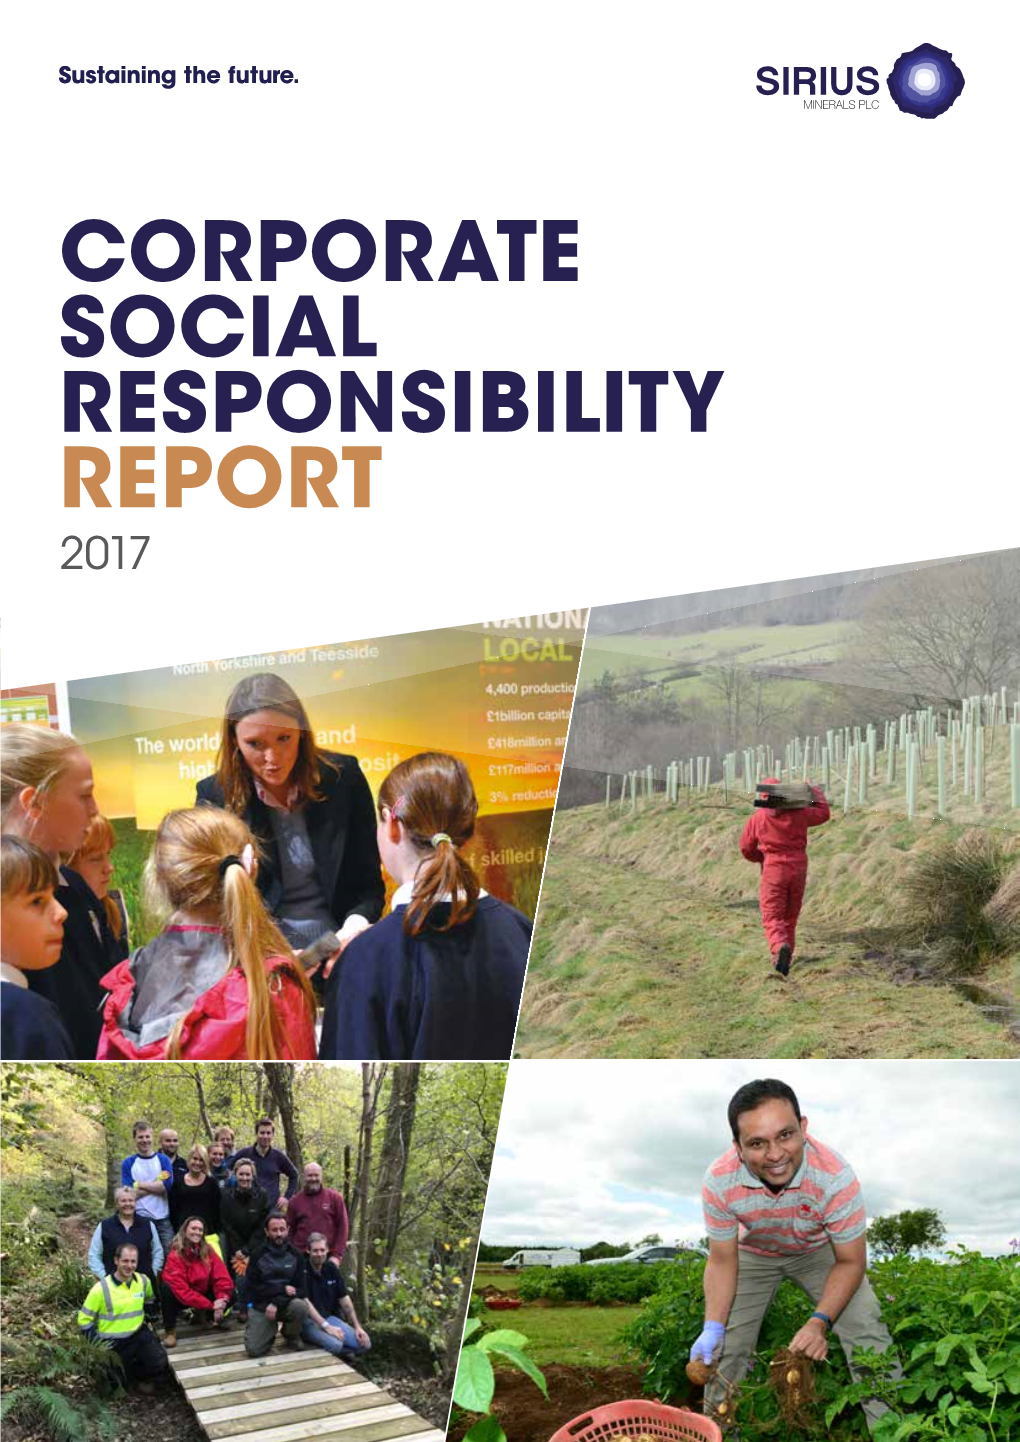 CORPORATE SOCIAL RESPONSIBILITY REPORT 2017 SIRIUS MINERALS / Corporate Social Responsibility Report